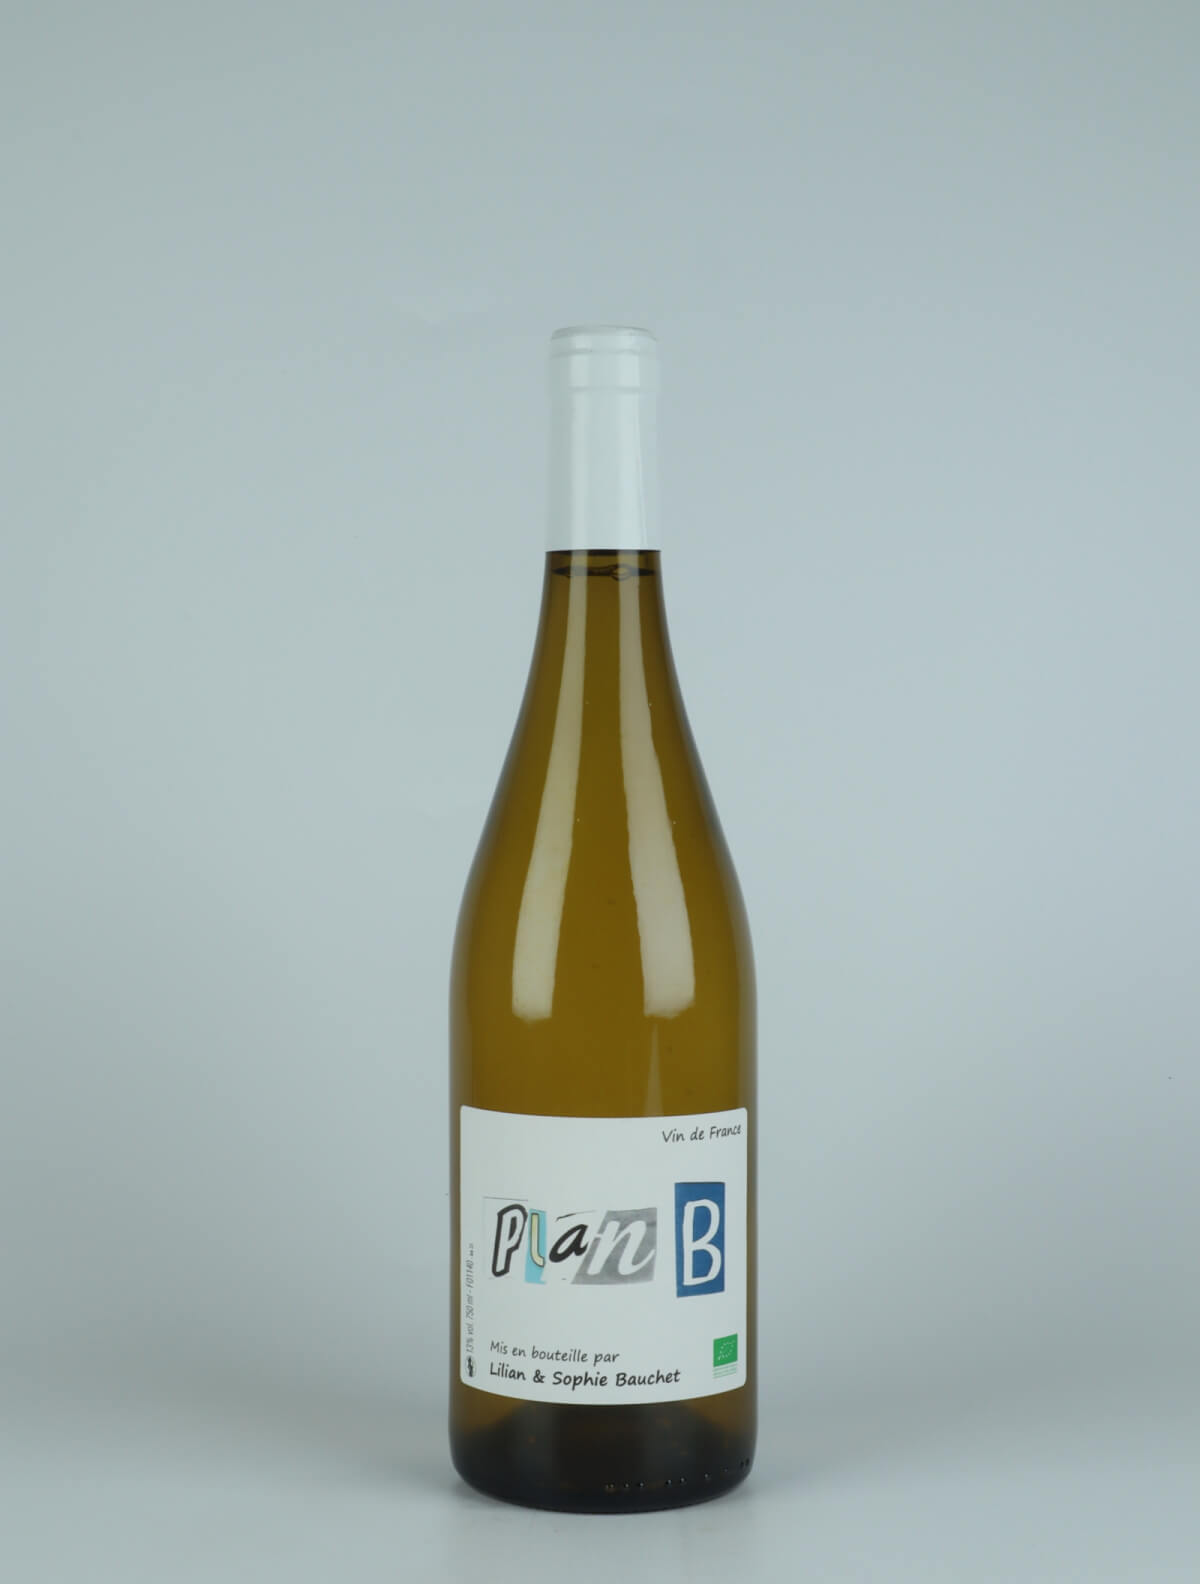 A bottle 2021 Plan B White wine from Lilian et Sophie Bauchet, Beaujolais in France